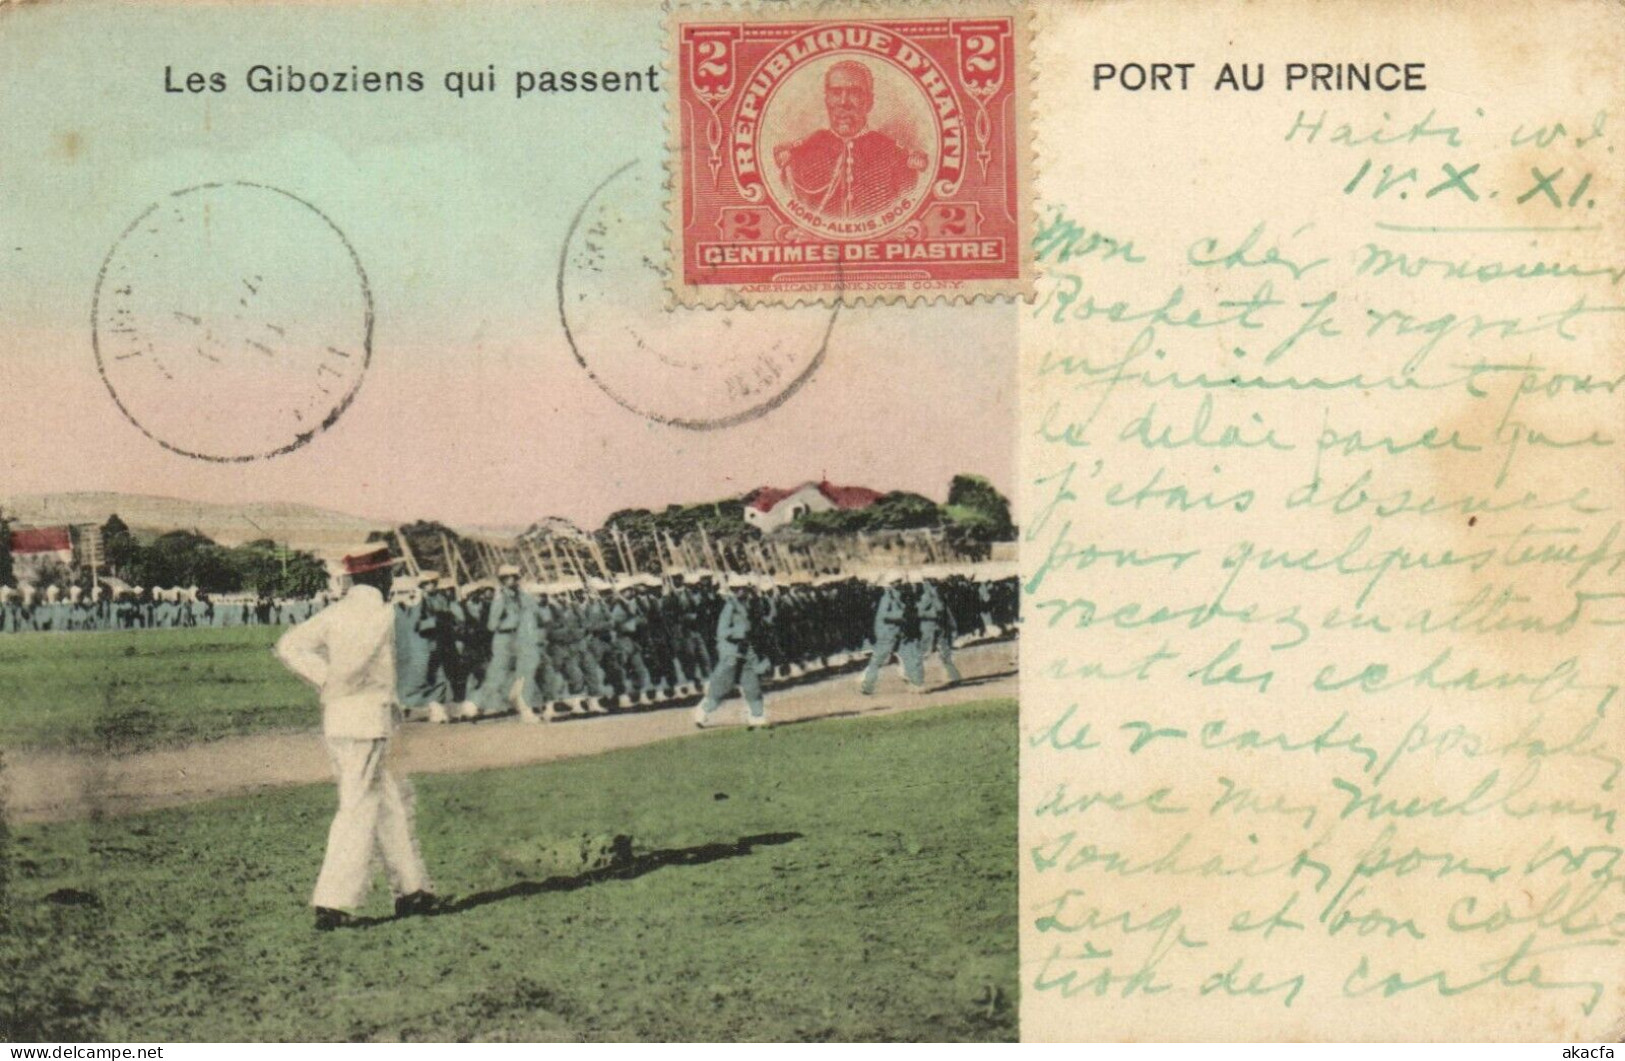 PC HAITI CARIBBEAN PORT-au-PRINCE LES GIBOZIENS Vintage Postcard (b52082) - Haiti